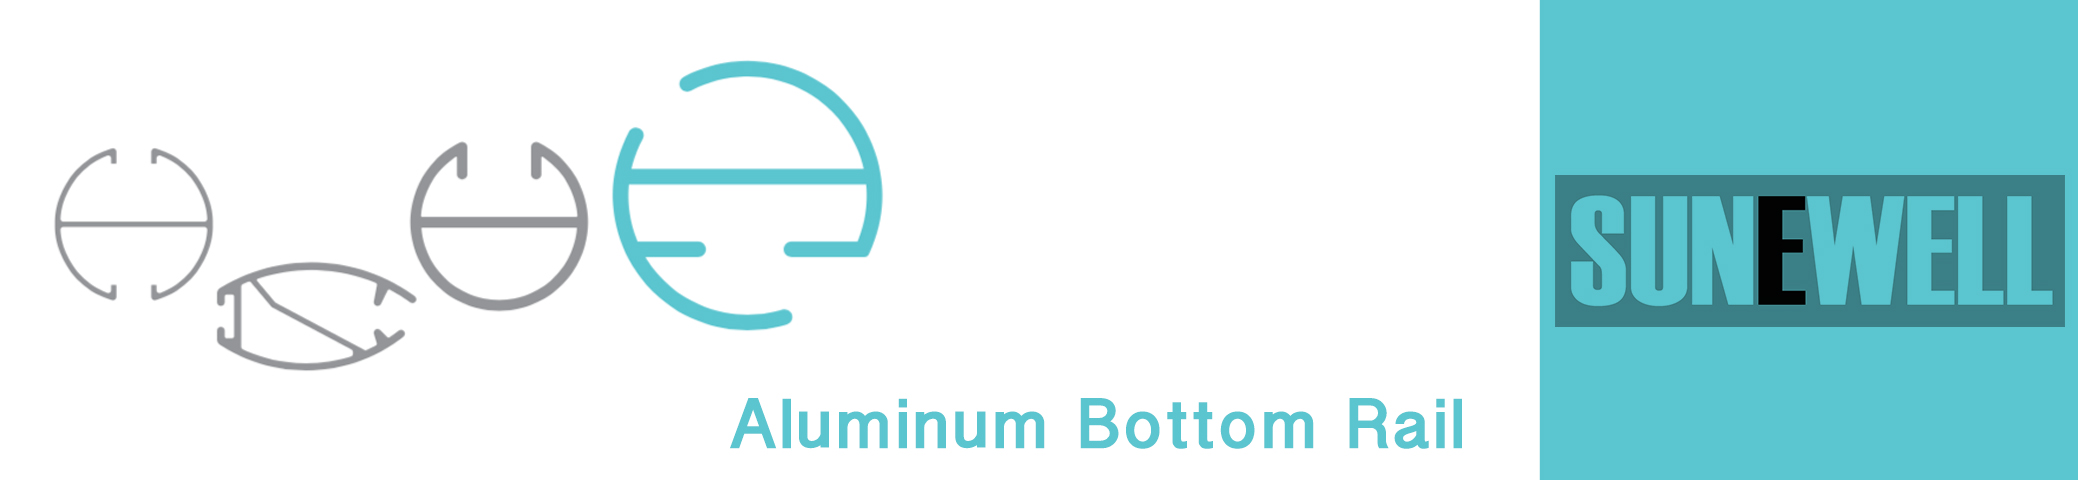 Roller Blinds Aluminum Bottom Rail Series